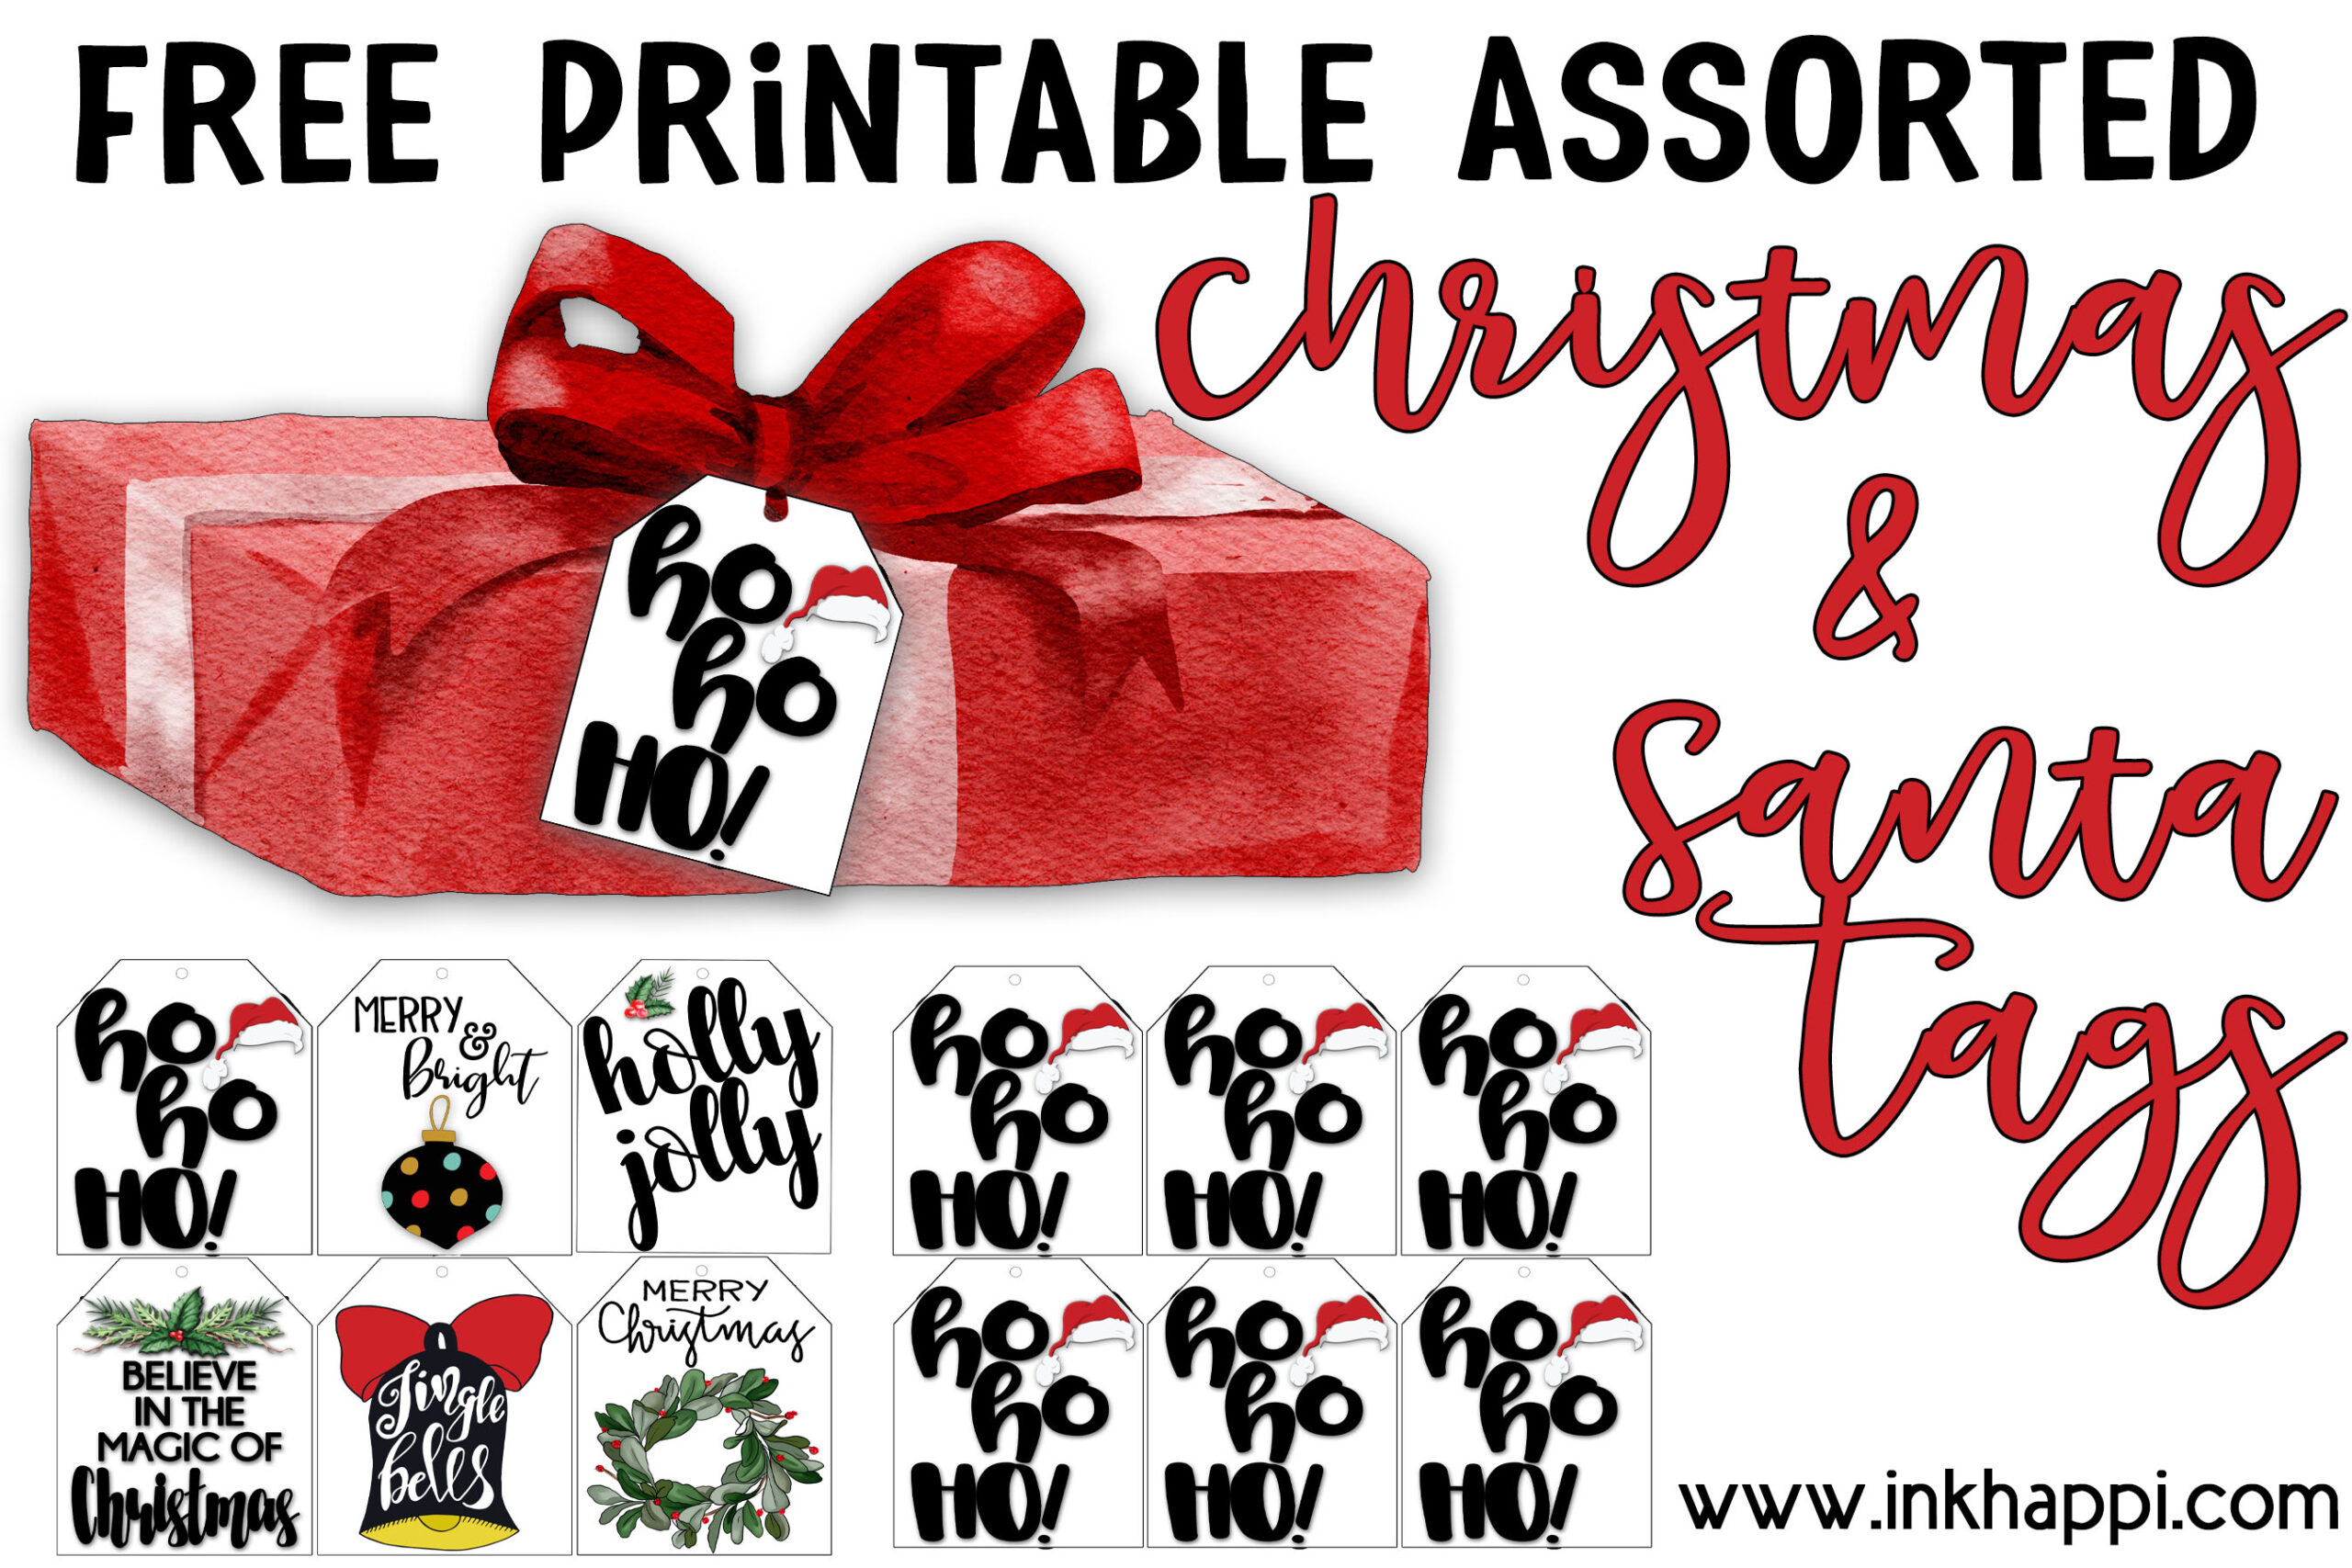 Free printable assorted cute Christmas tags. 6 styles including Santa hohoho gift tags. @freeprintables #gifttags #Christmas